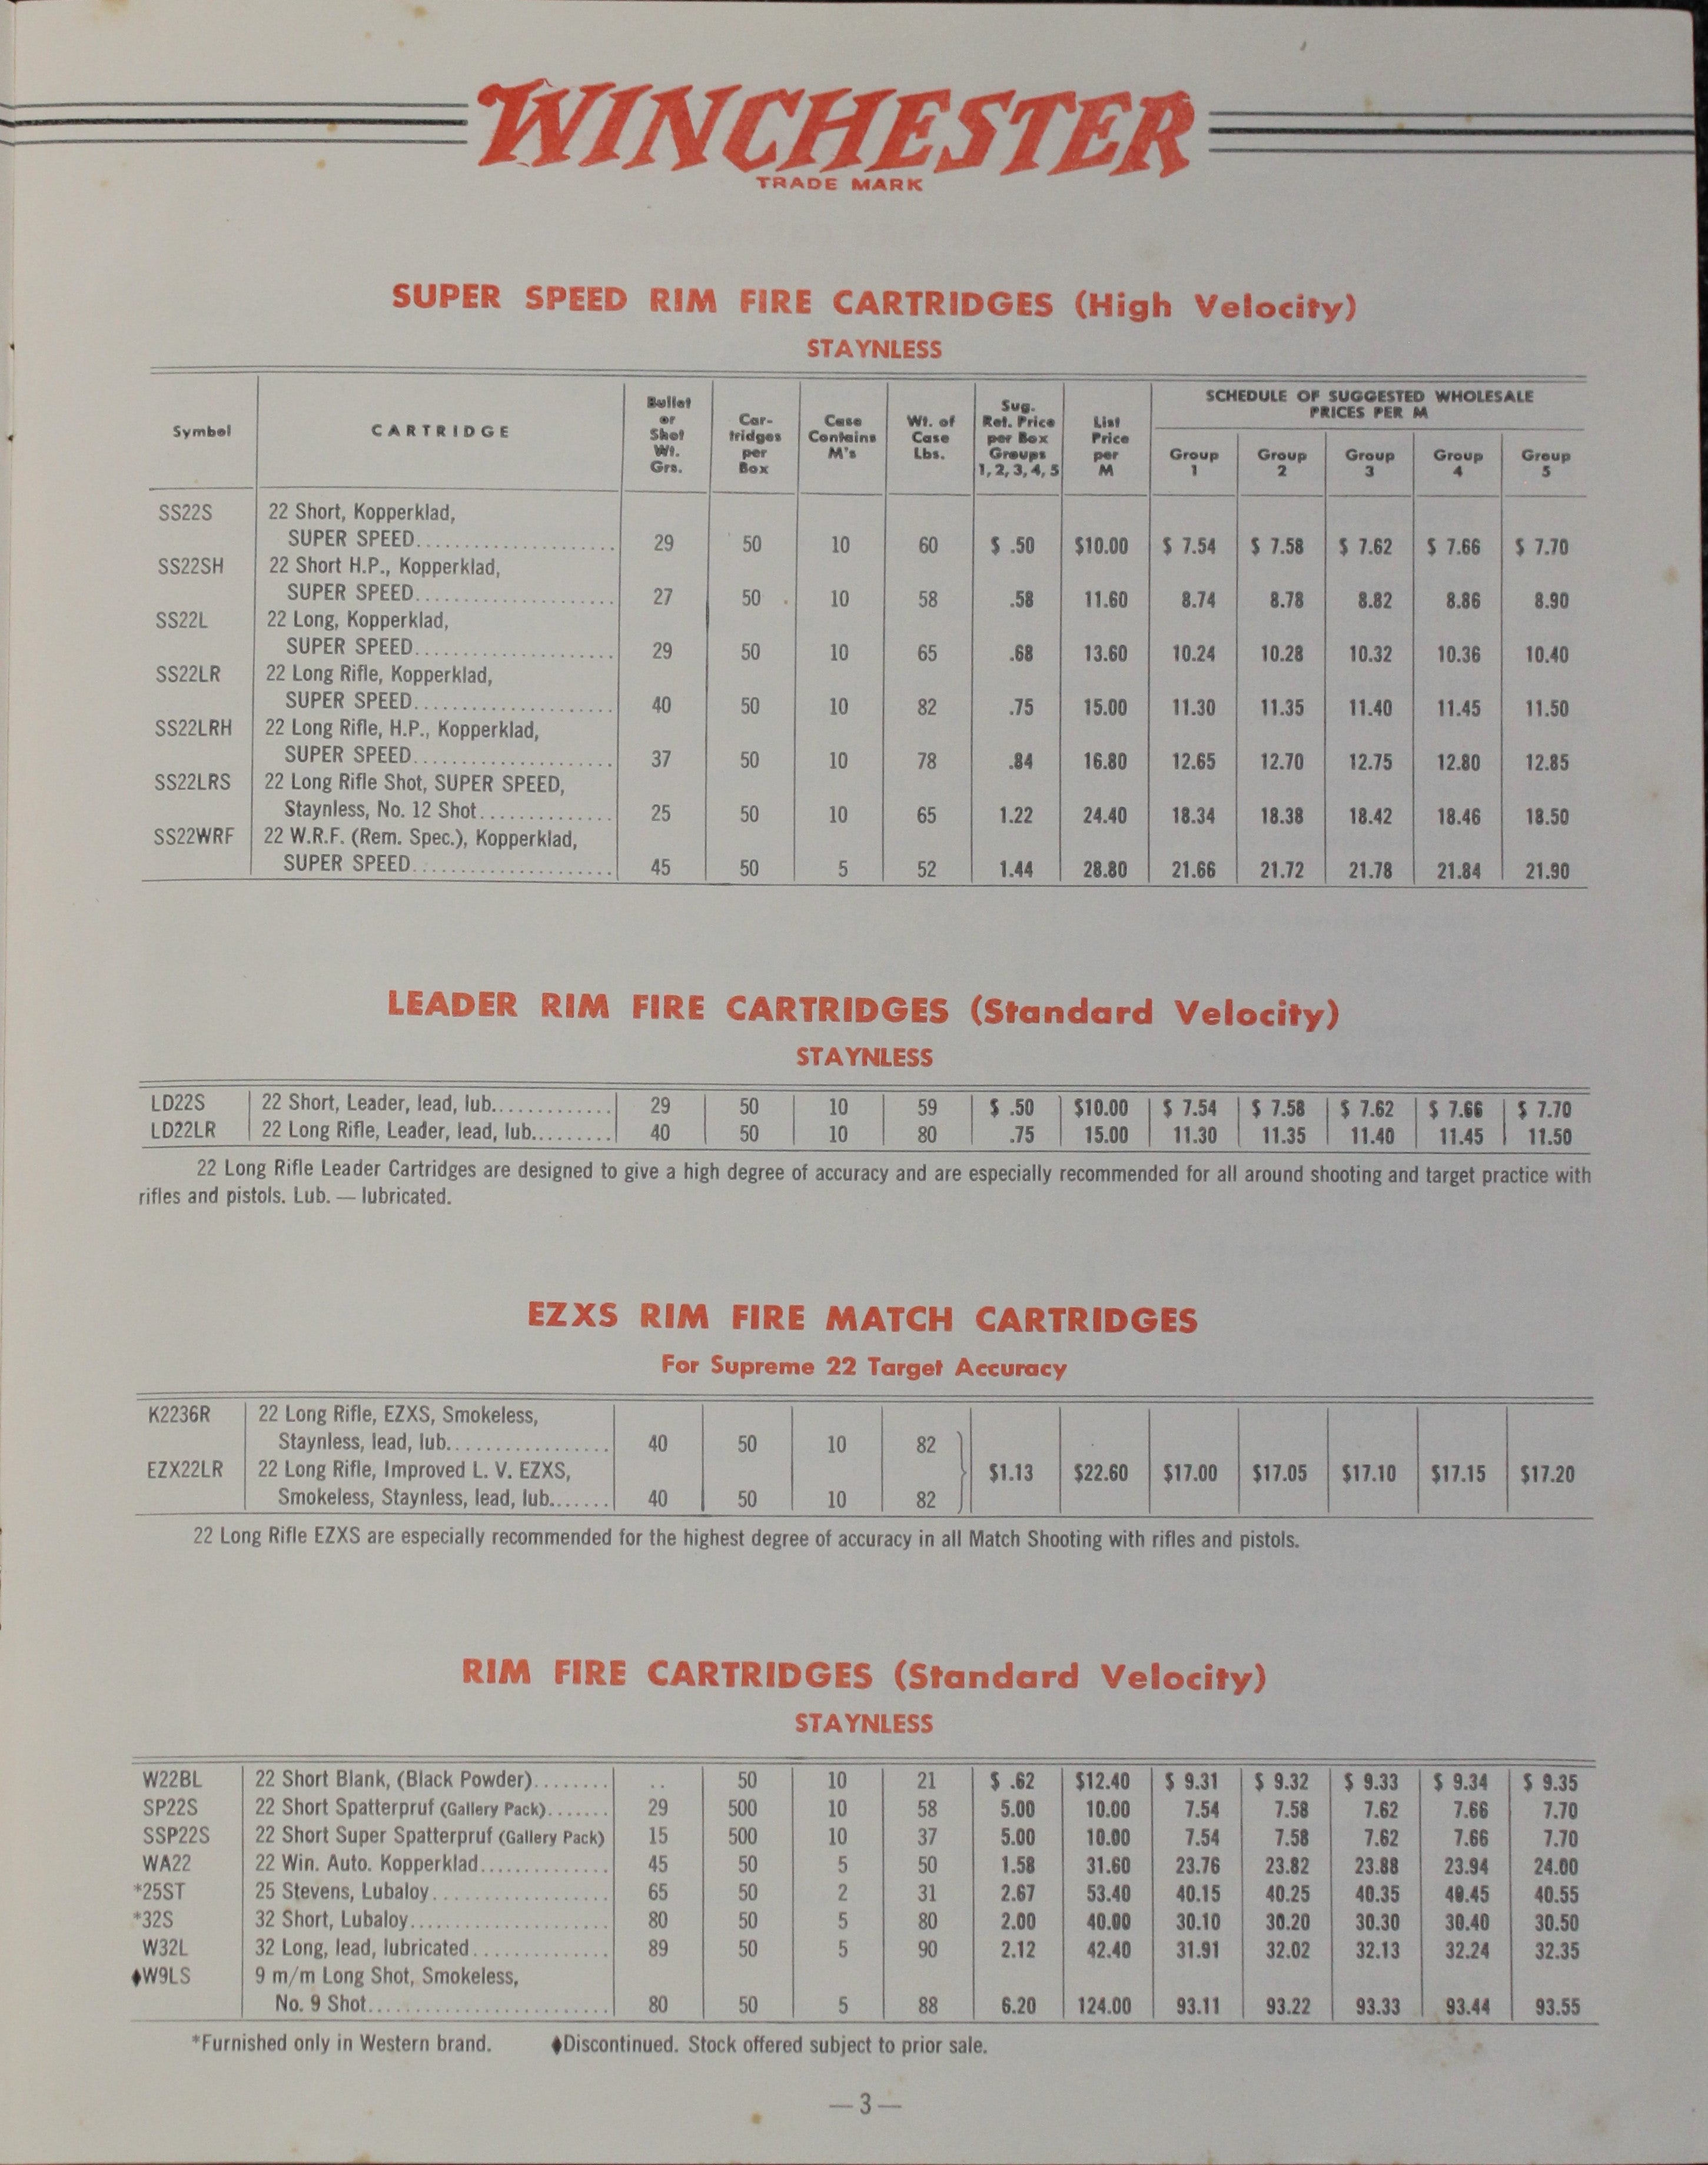 1955 Winchester Ammunition Price List - No. 2236